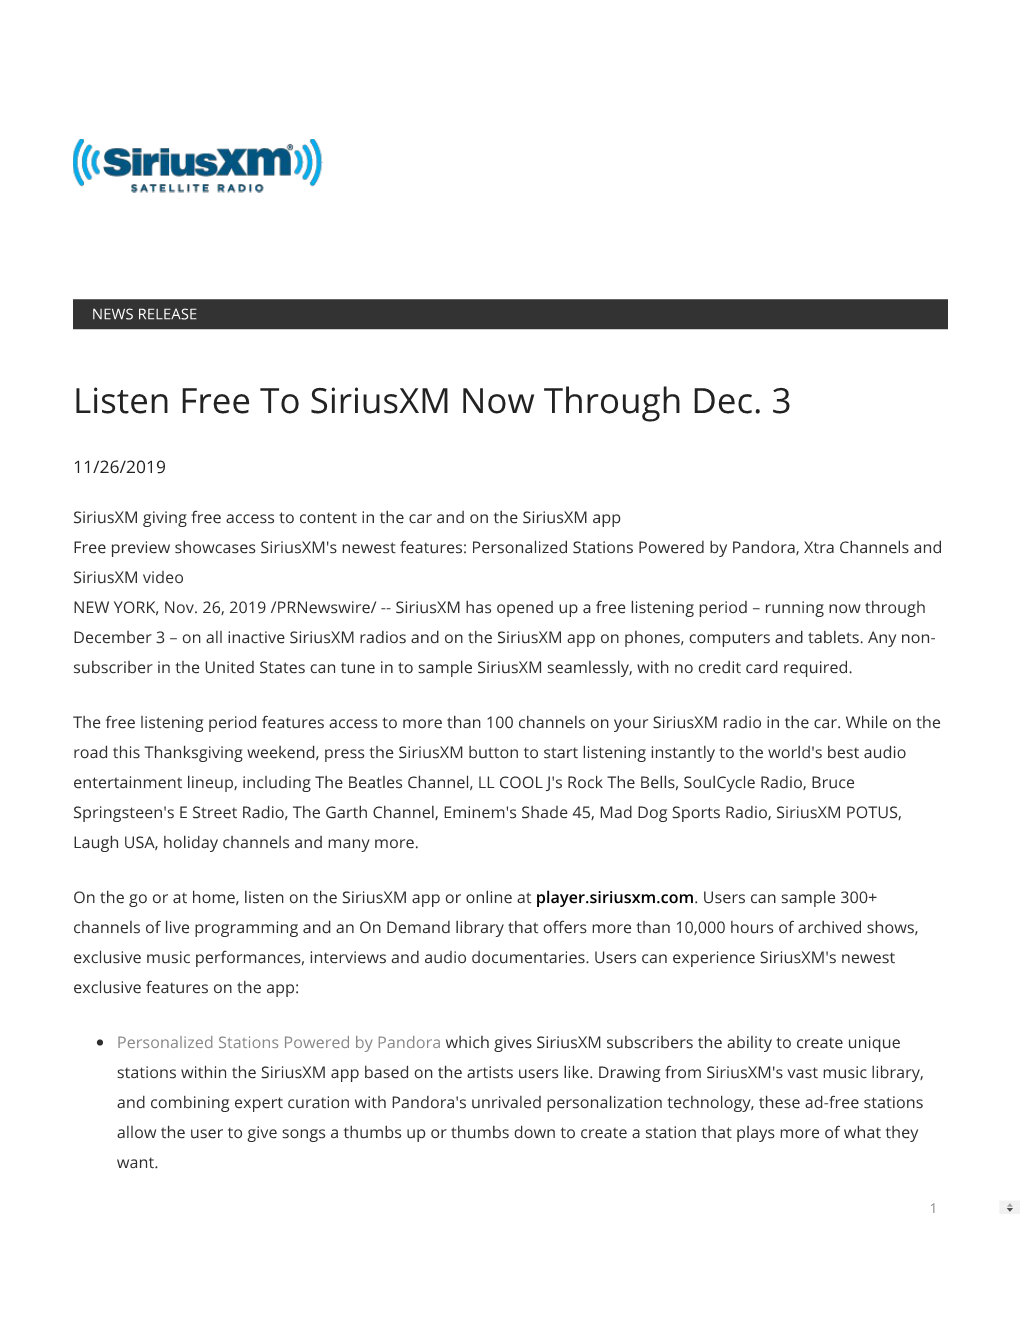 Listen Free to Siriusxm Now Through Dec. 3